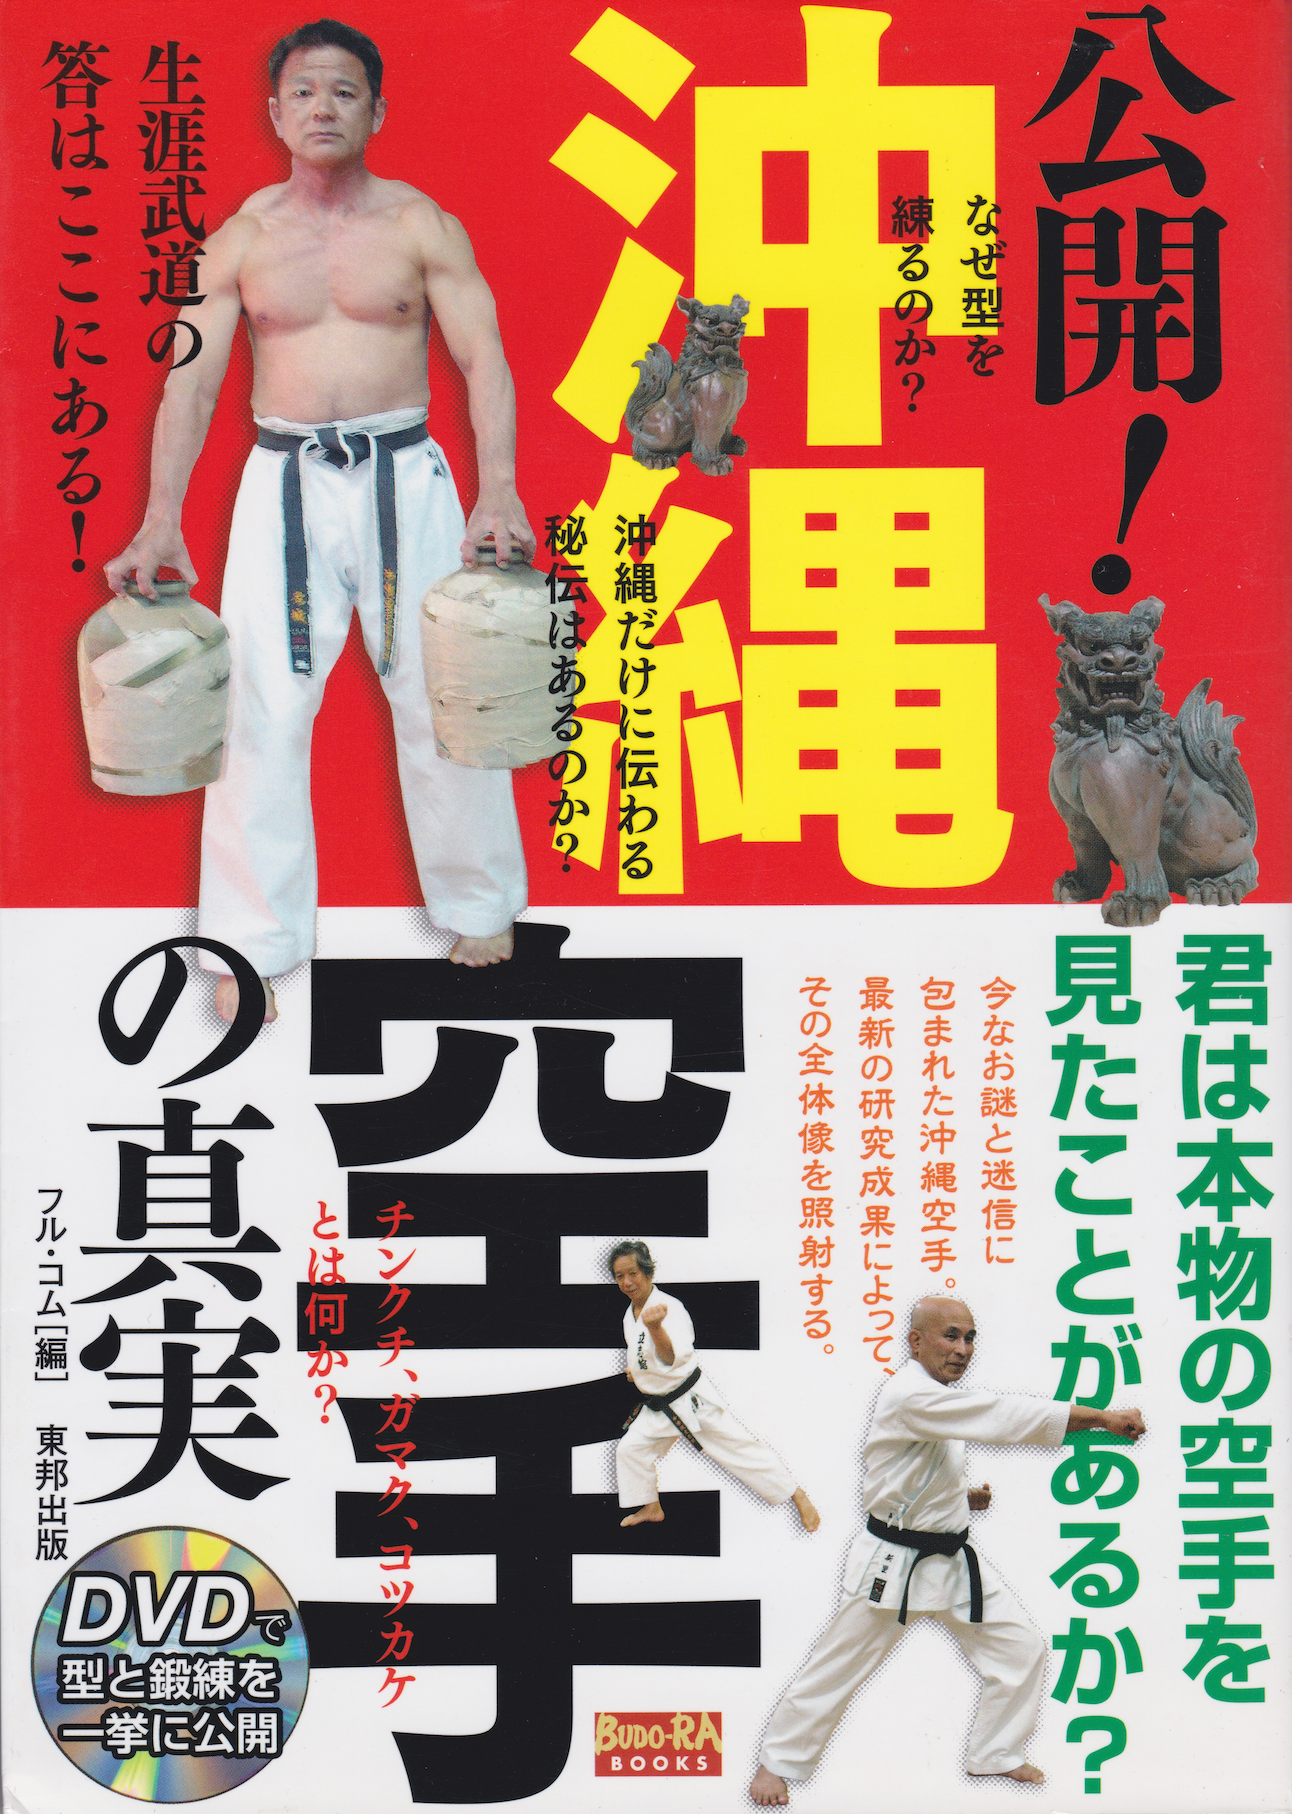 La verdad sobre el libro y DVD del Karate de Okinawa (usado)